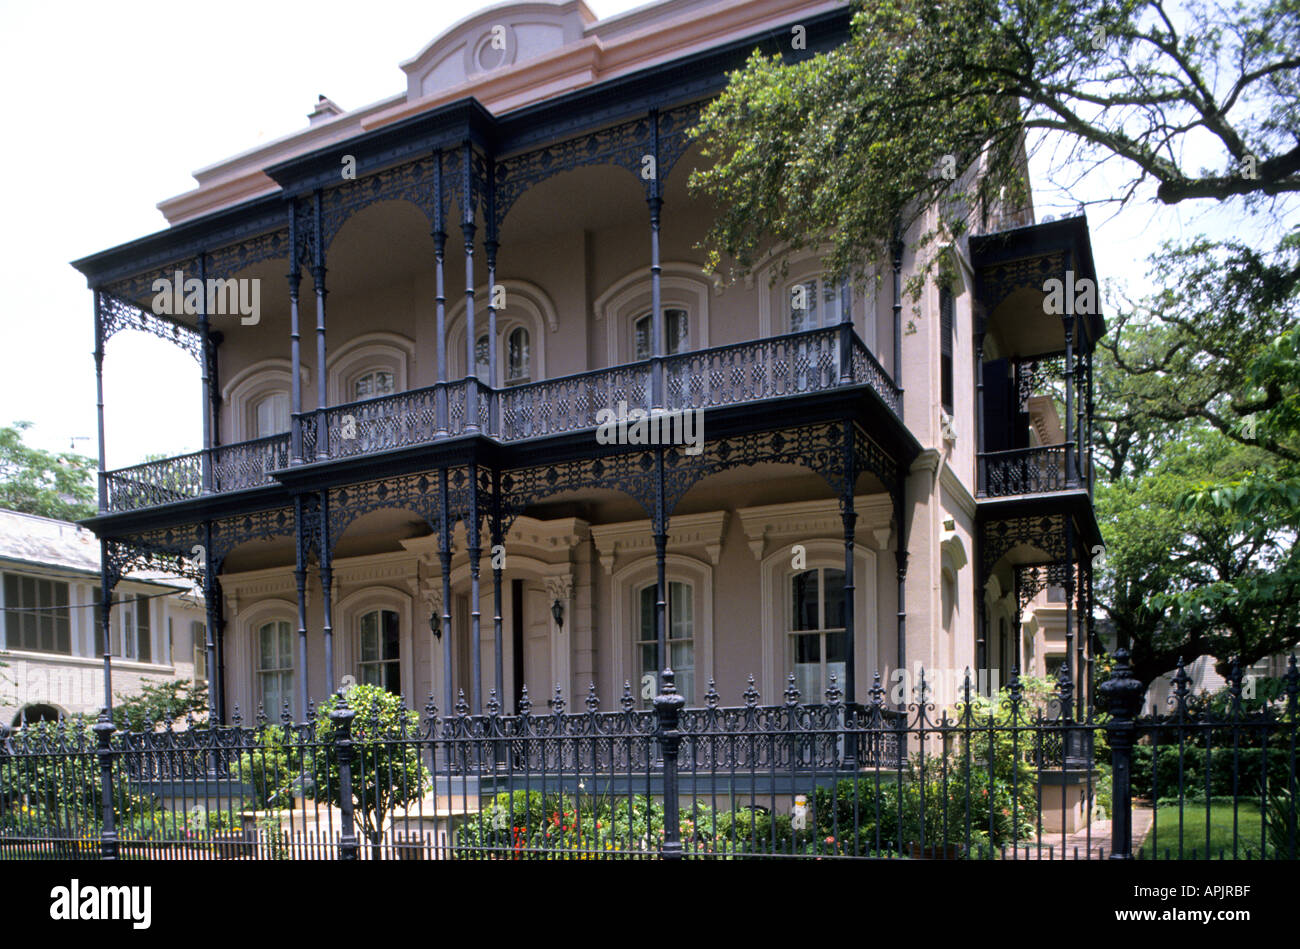 Garden District Von New Orleans Des 19 Jahrhunderts Villen